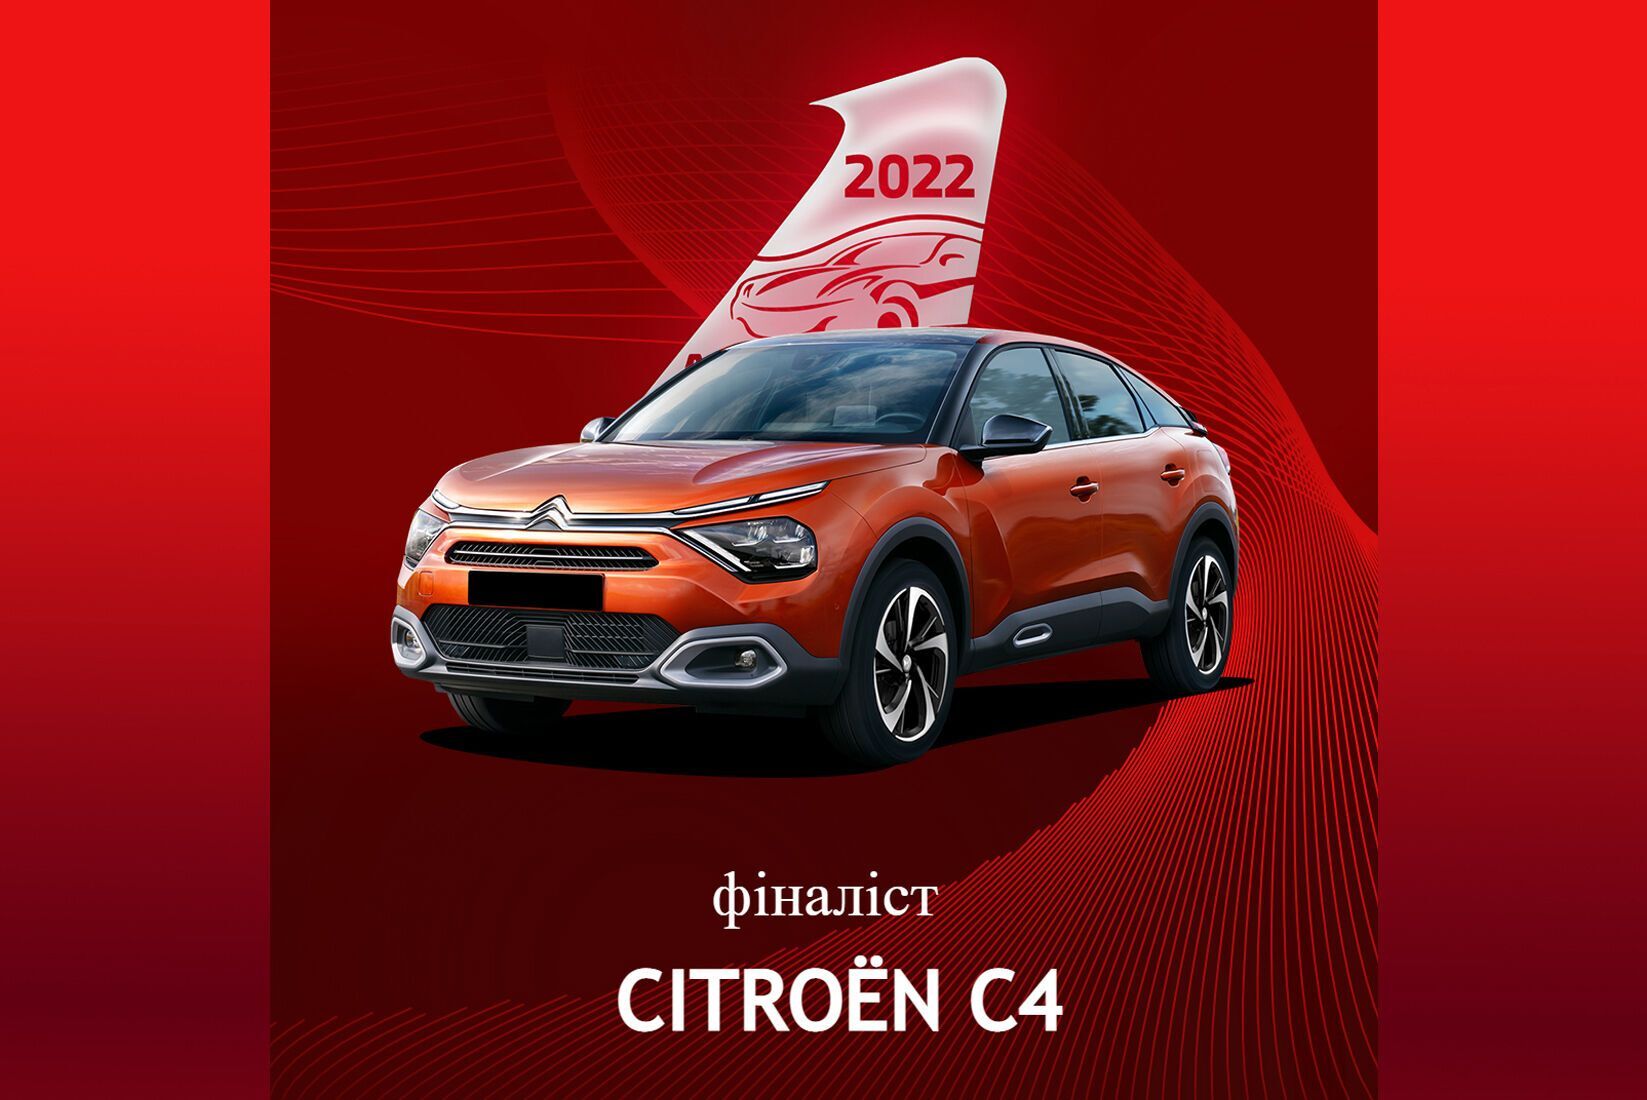 Citroen C4 претендует на победу в главной номинации конкурса